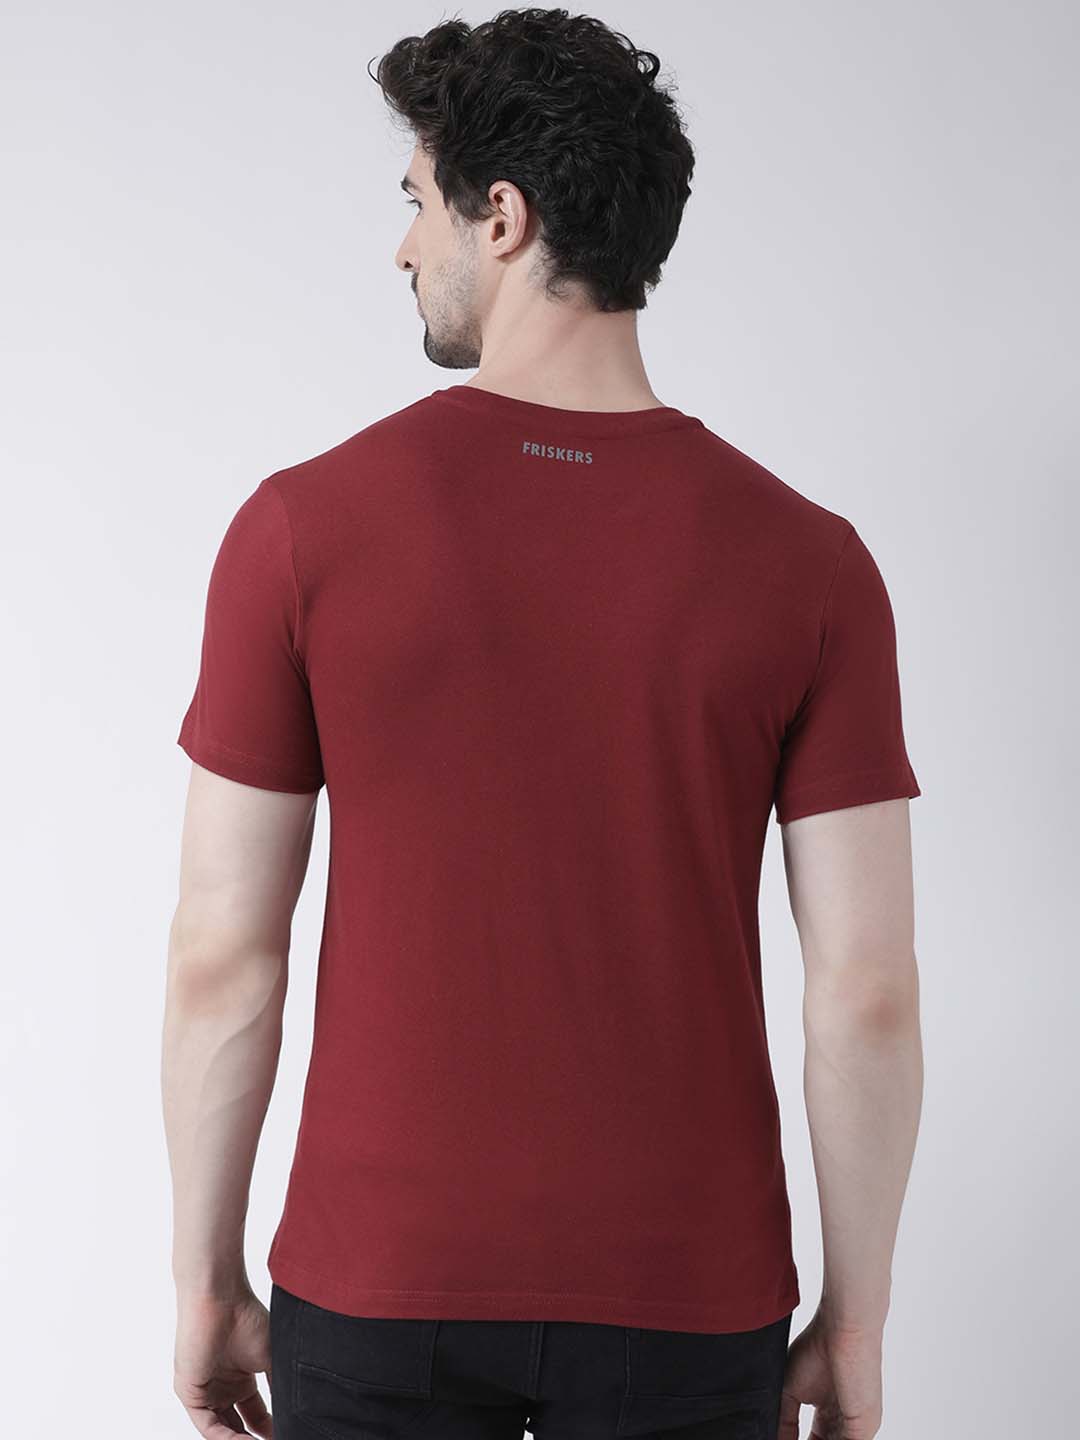 Men's System Phad Denge Cotton Regular Fit V Neck T-Shirt - Friskers